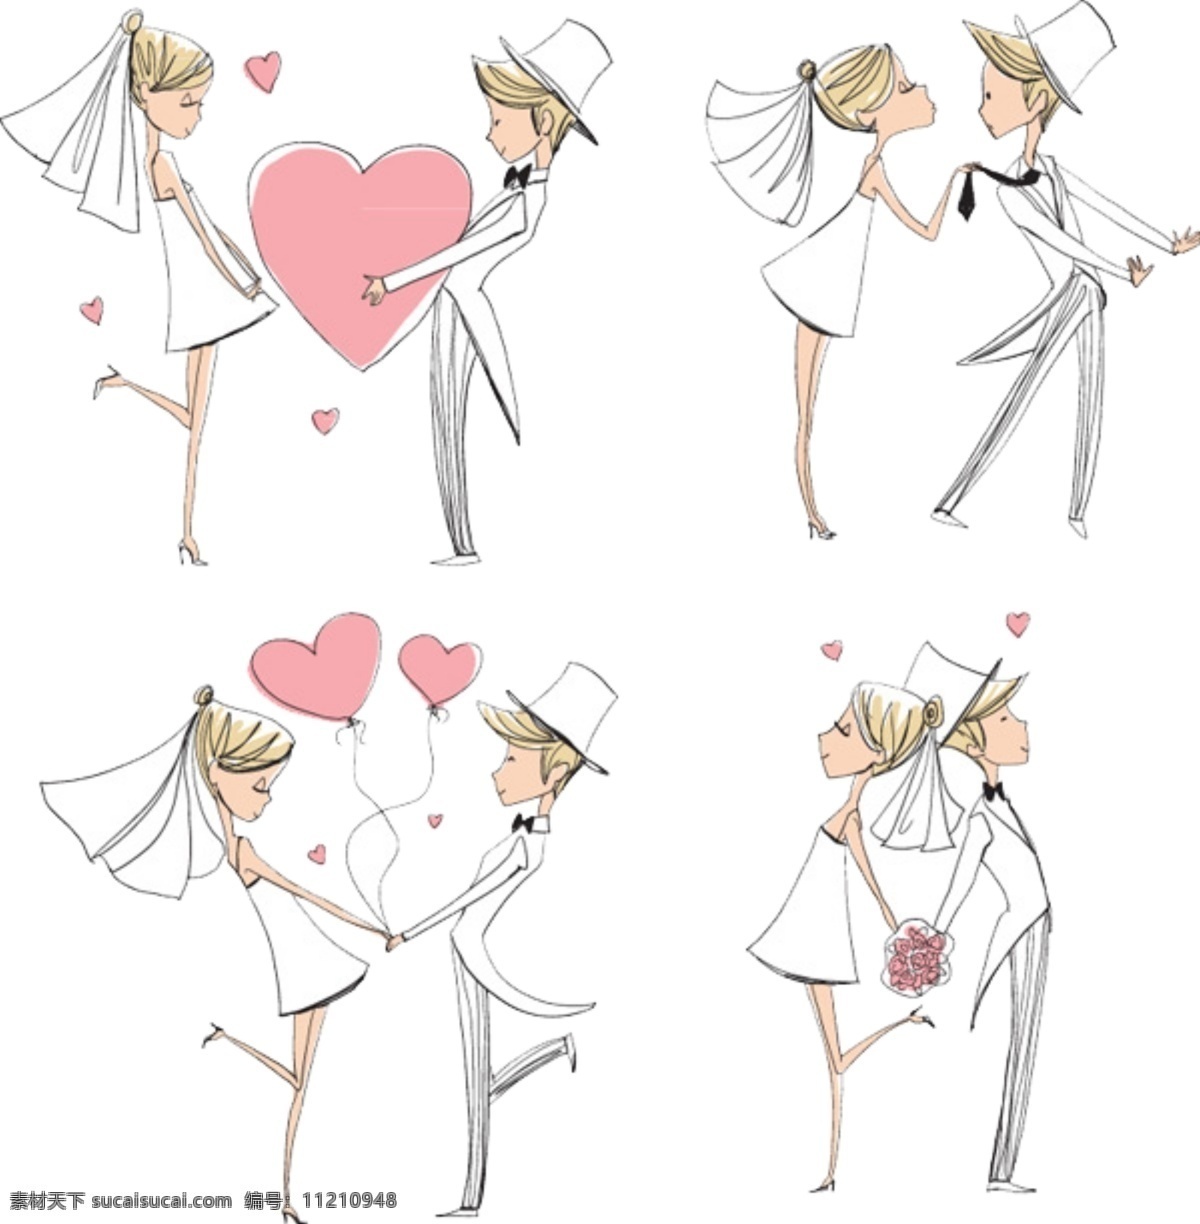 创意 新郎 新娘 卡通 形象 插画 情侣 结婚 婚姻 卡通形象 手绘 可爱 趣味 免抠 婚庆海报设计 分层